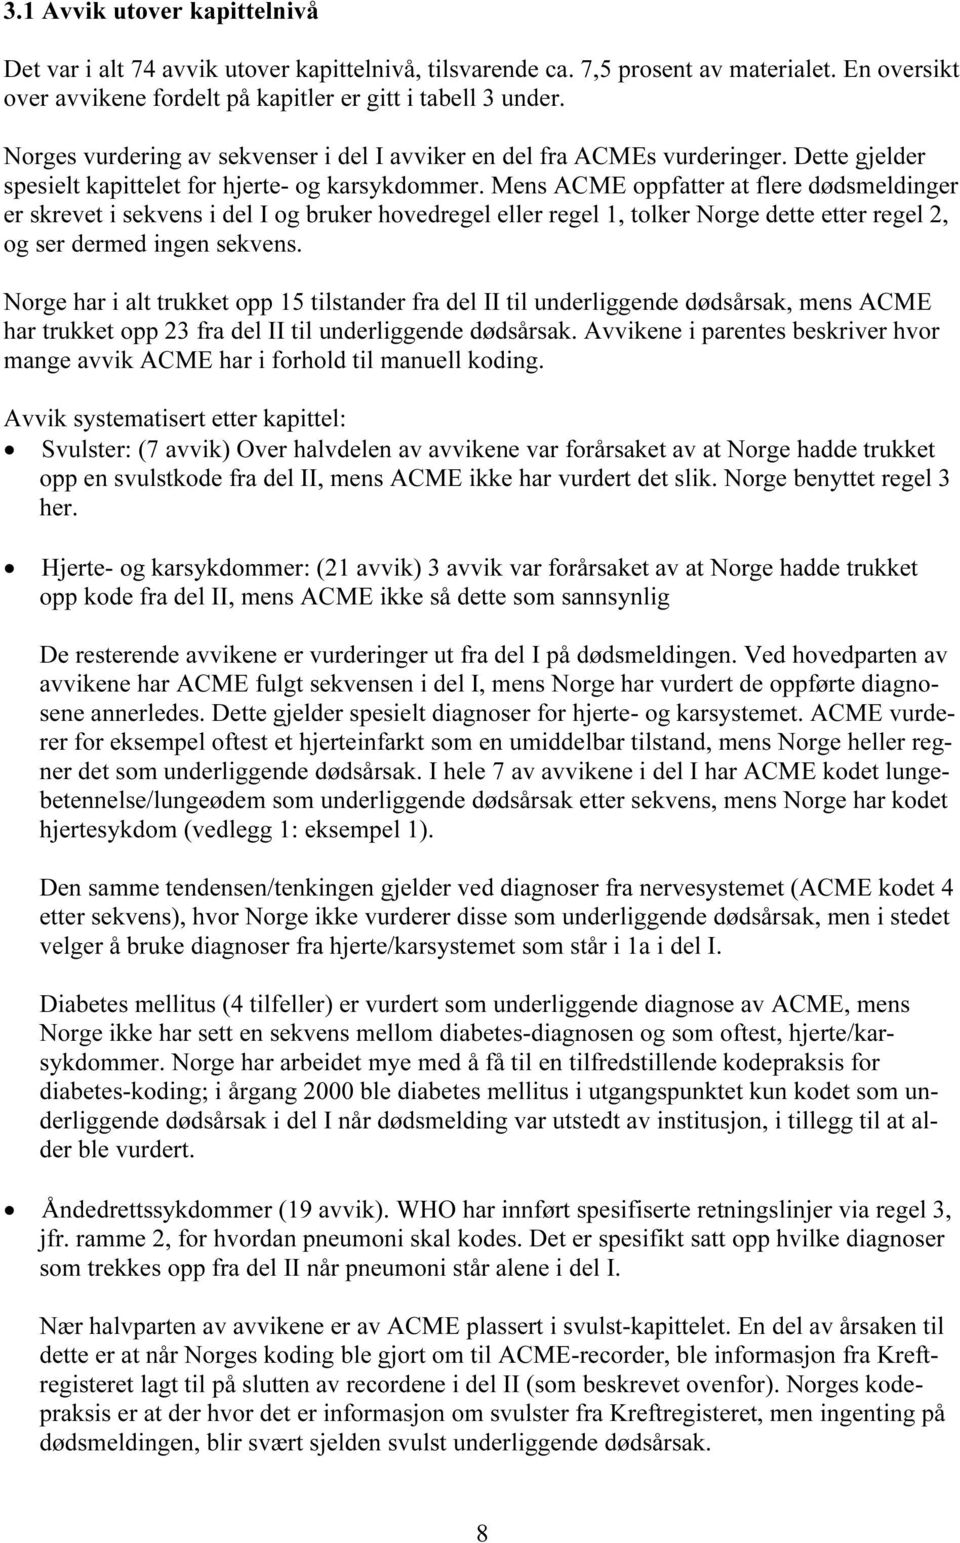 Mens ACME oppfatter at flere dødsmeldinger er skrevet i sekvens i del I og bruker hovedregel eller regel 1, tolker Norge dette etter regel 2, og ser dermed ingen sekvens.